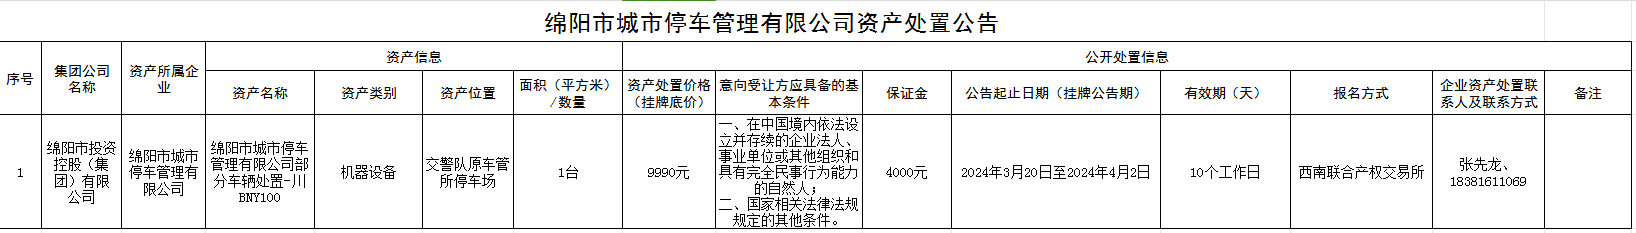 绵阳市城市停车管理有限公司资产处置公告0315